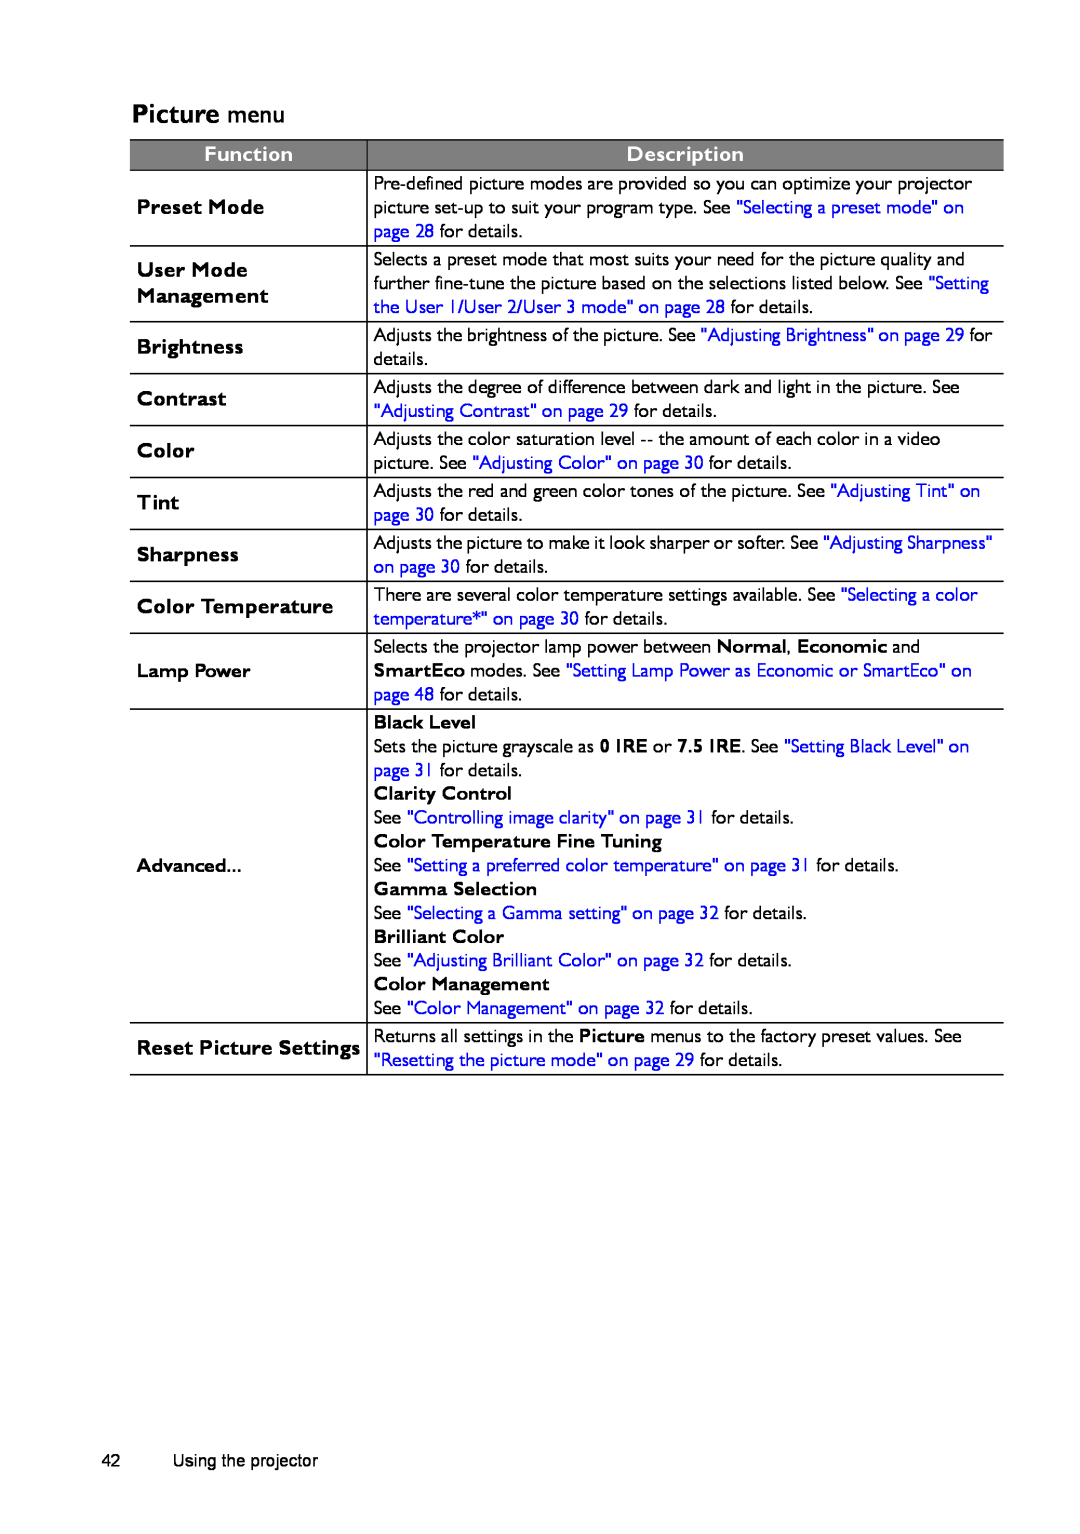 BenQ W770ST user manual Picture menu 